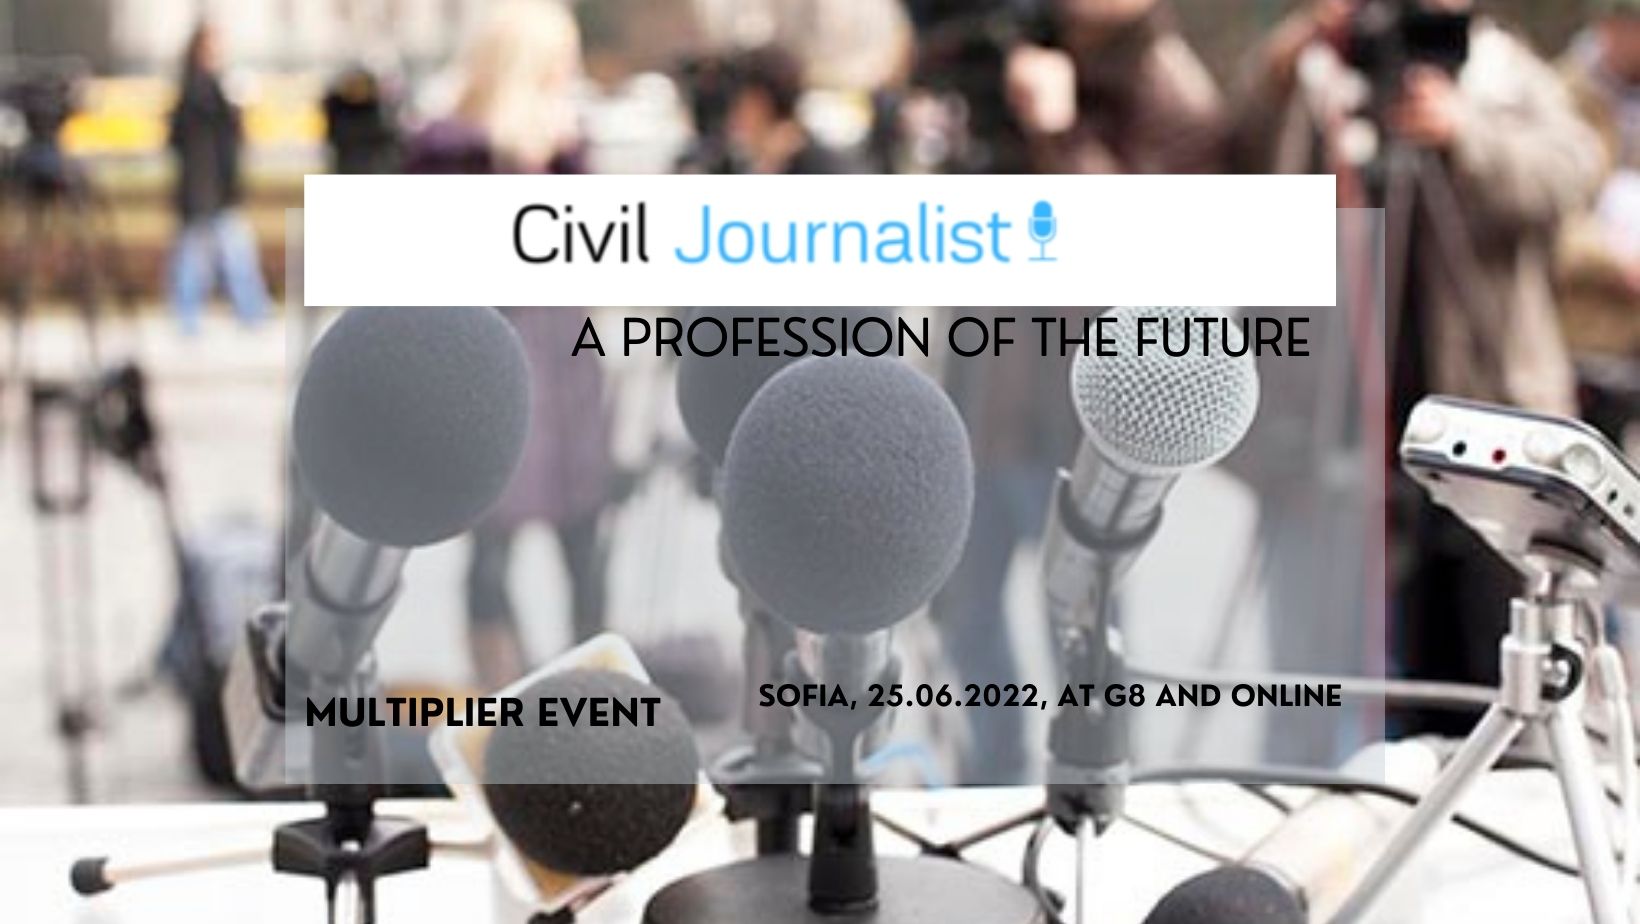 Събитие за разпространение на резултати по проект „Гражданската журналистика - професия на бъдещето” по програма ”Еразъм+”